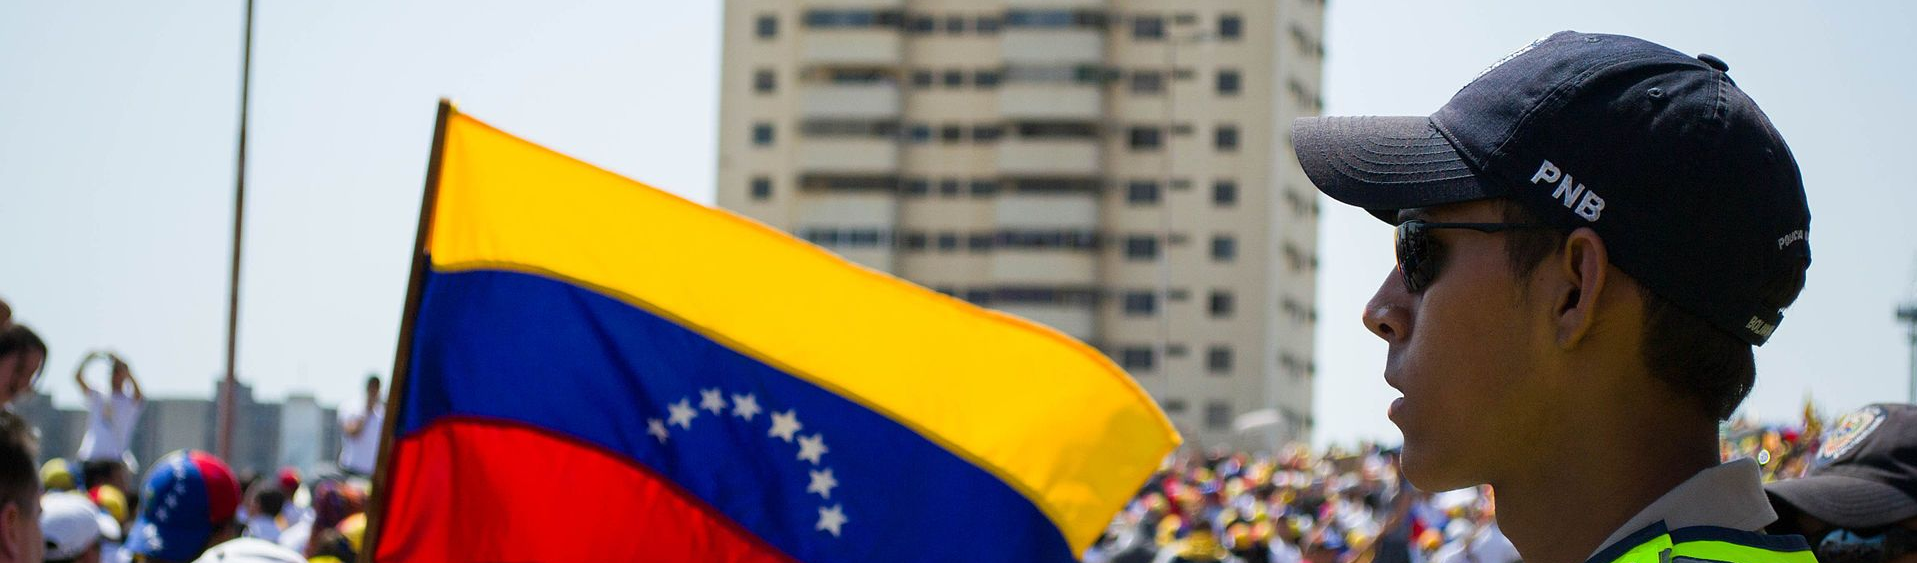 Interesses geopolíticos e ideológicos dos EUA alimentam o noticiário sobre a Venezuela